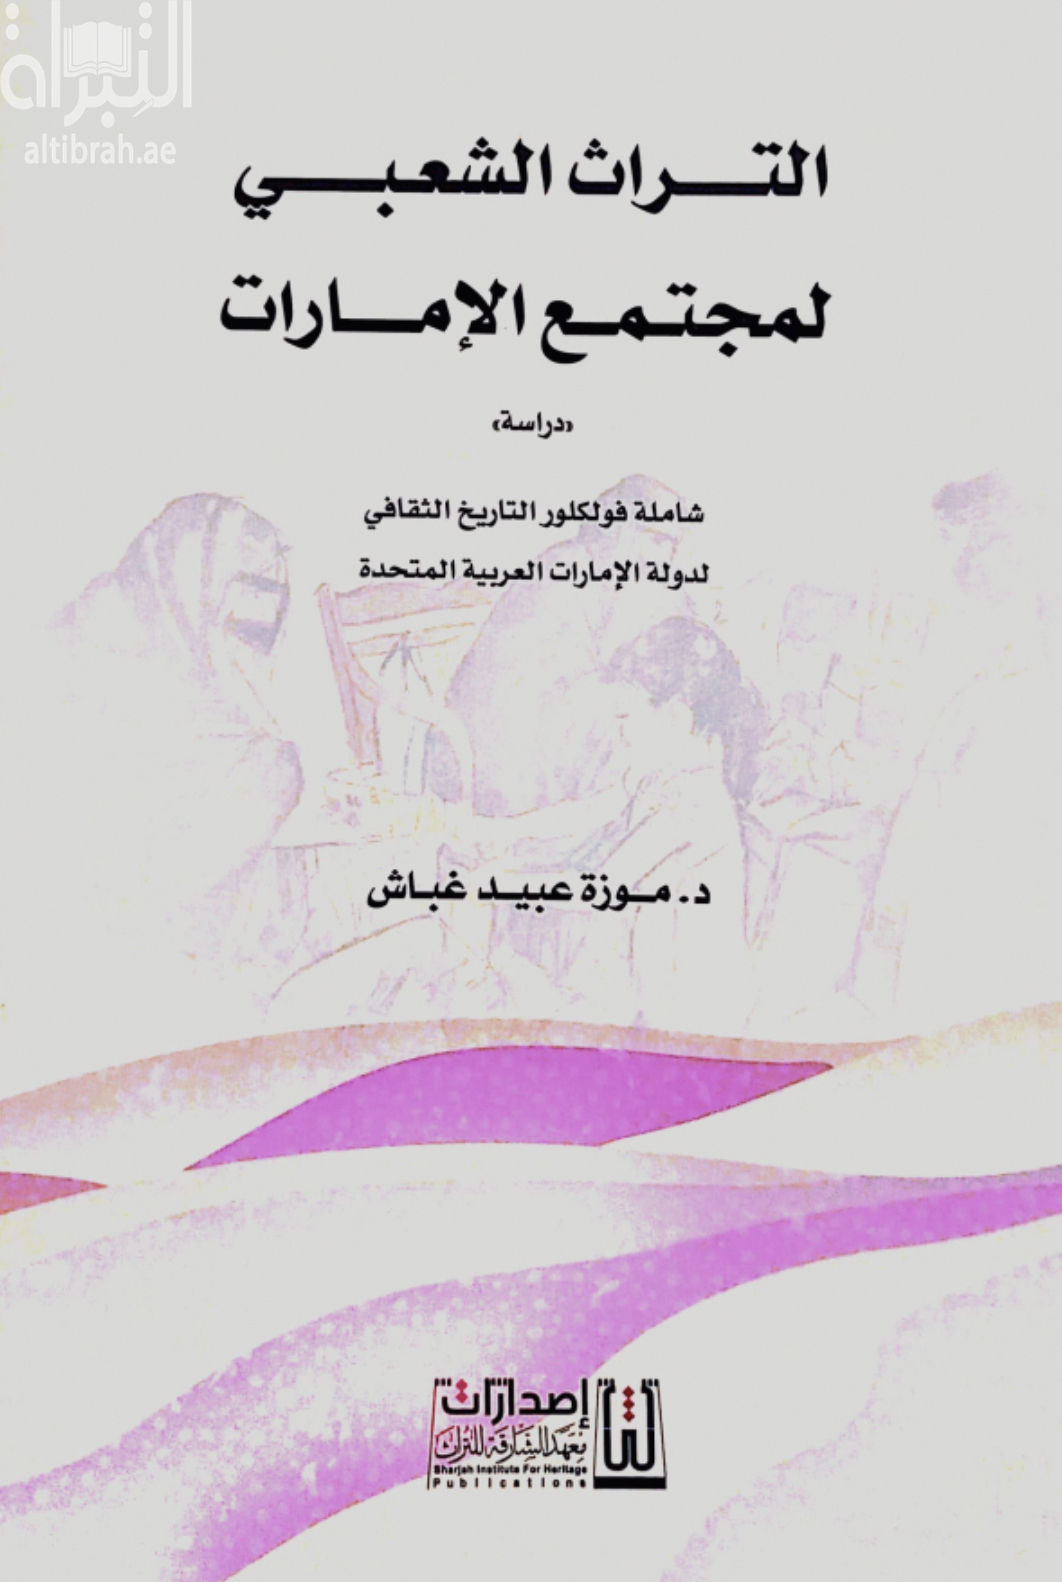 غلاف كتاب التراث الشعبي لمجتمع الإمارات - دراسة - شاملة فولكلور التاريخ الثقافي لدولة الإمارات العربية المتحدة